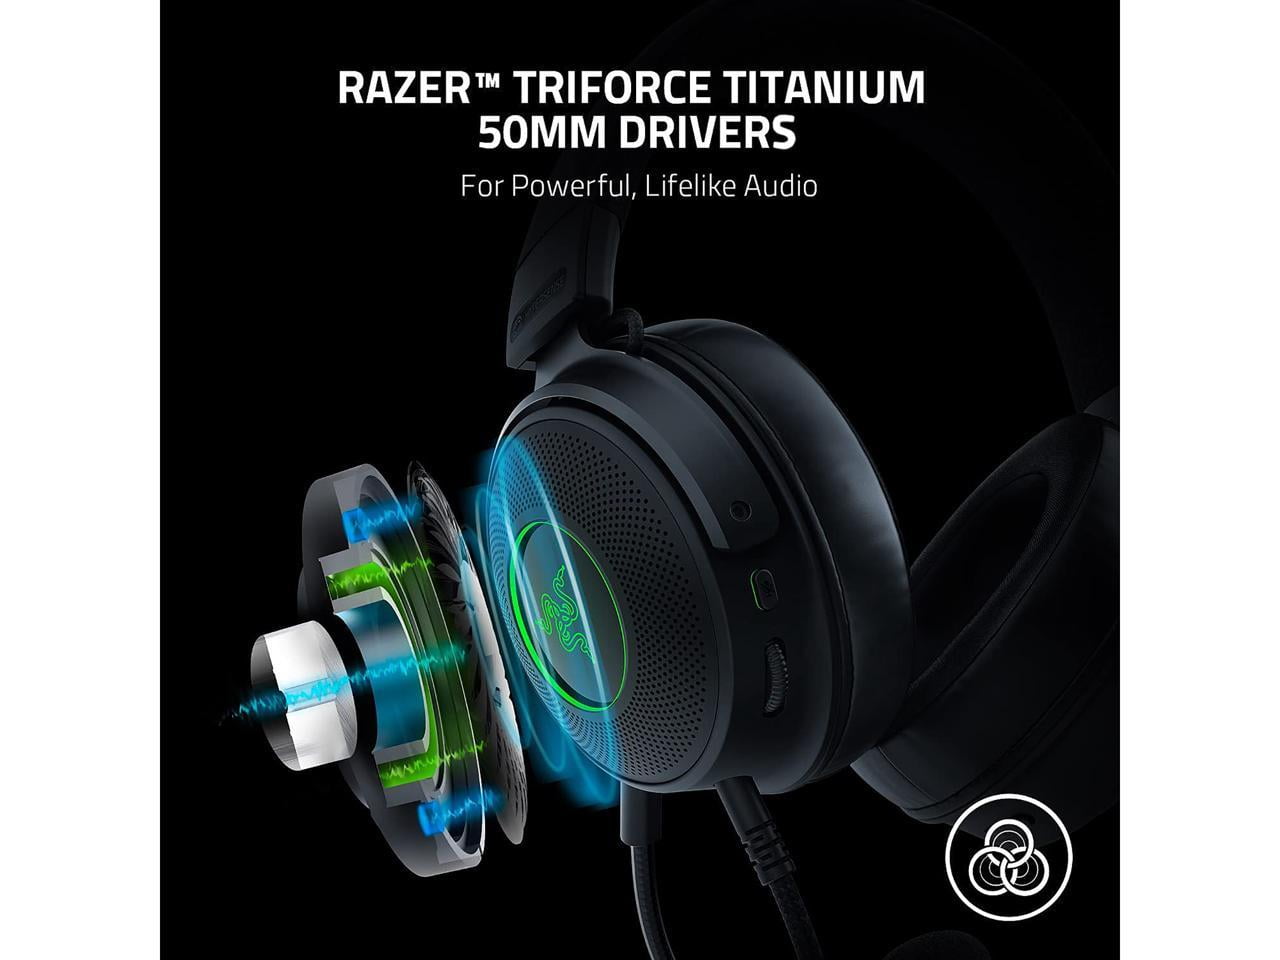 Razer Kraken V3 Hypersense - Casque Gaming USB Filaire avec Technologie  Haptique (Haut-parleurs TriForce de 50mm, Son Spatial THX, Microphone  Amovible